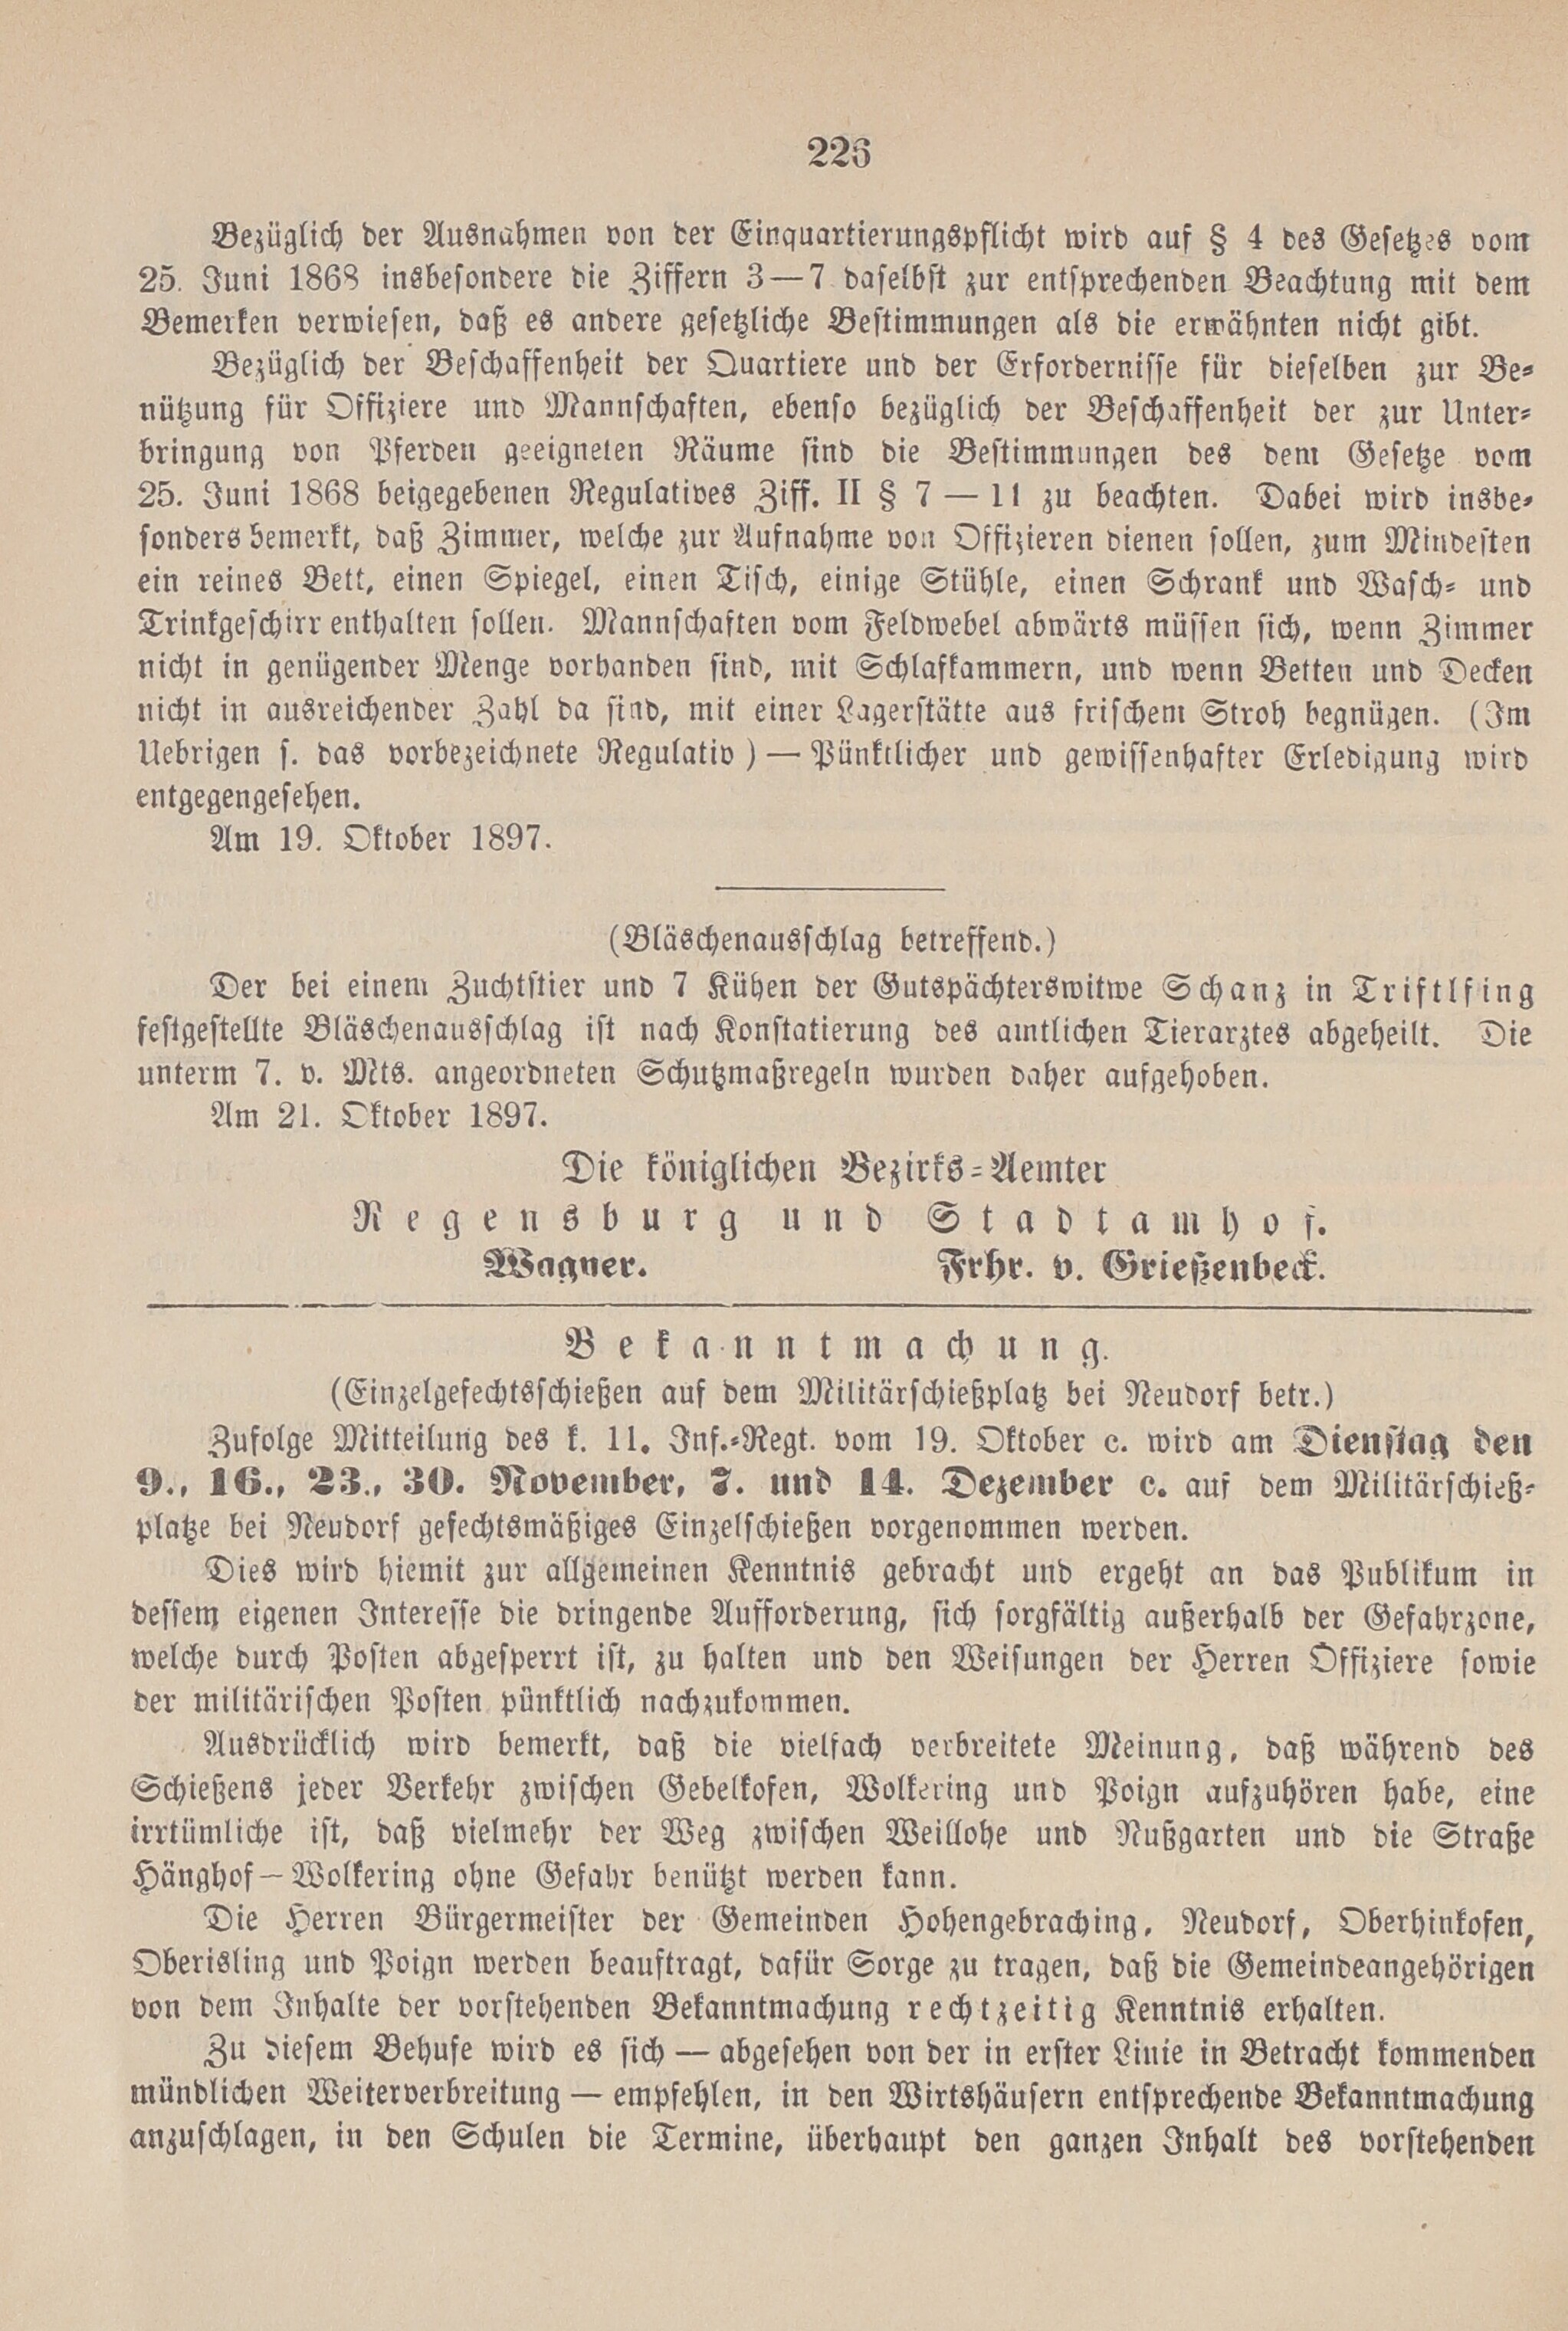 2. amtsblatt-stadtamhof-regensburg-1897-10-24-n43_2350